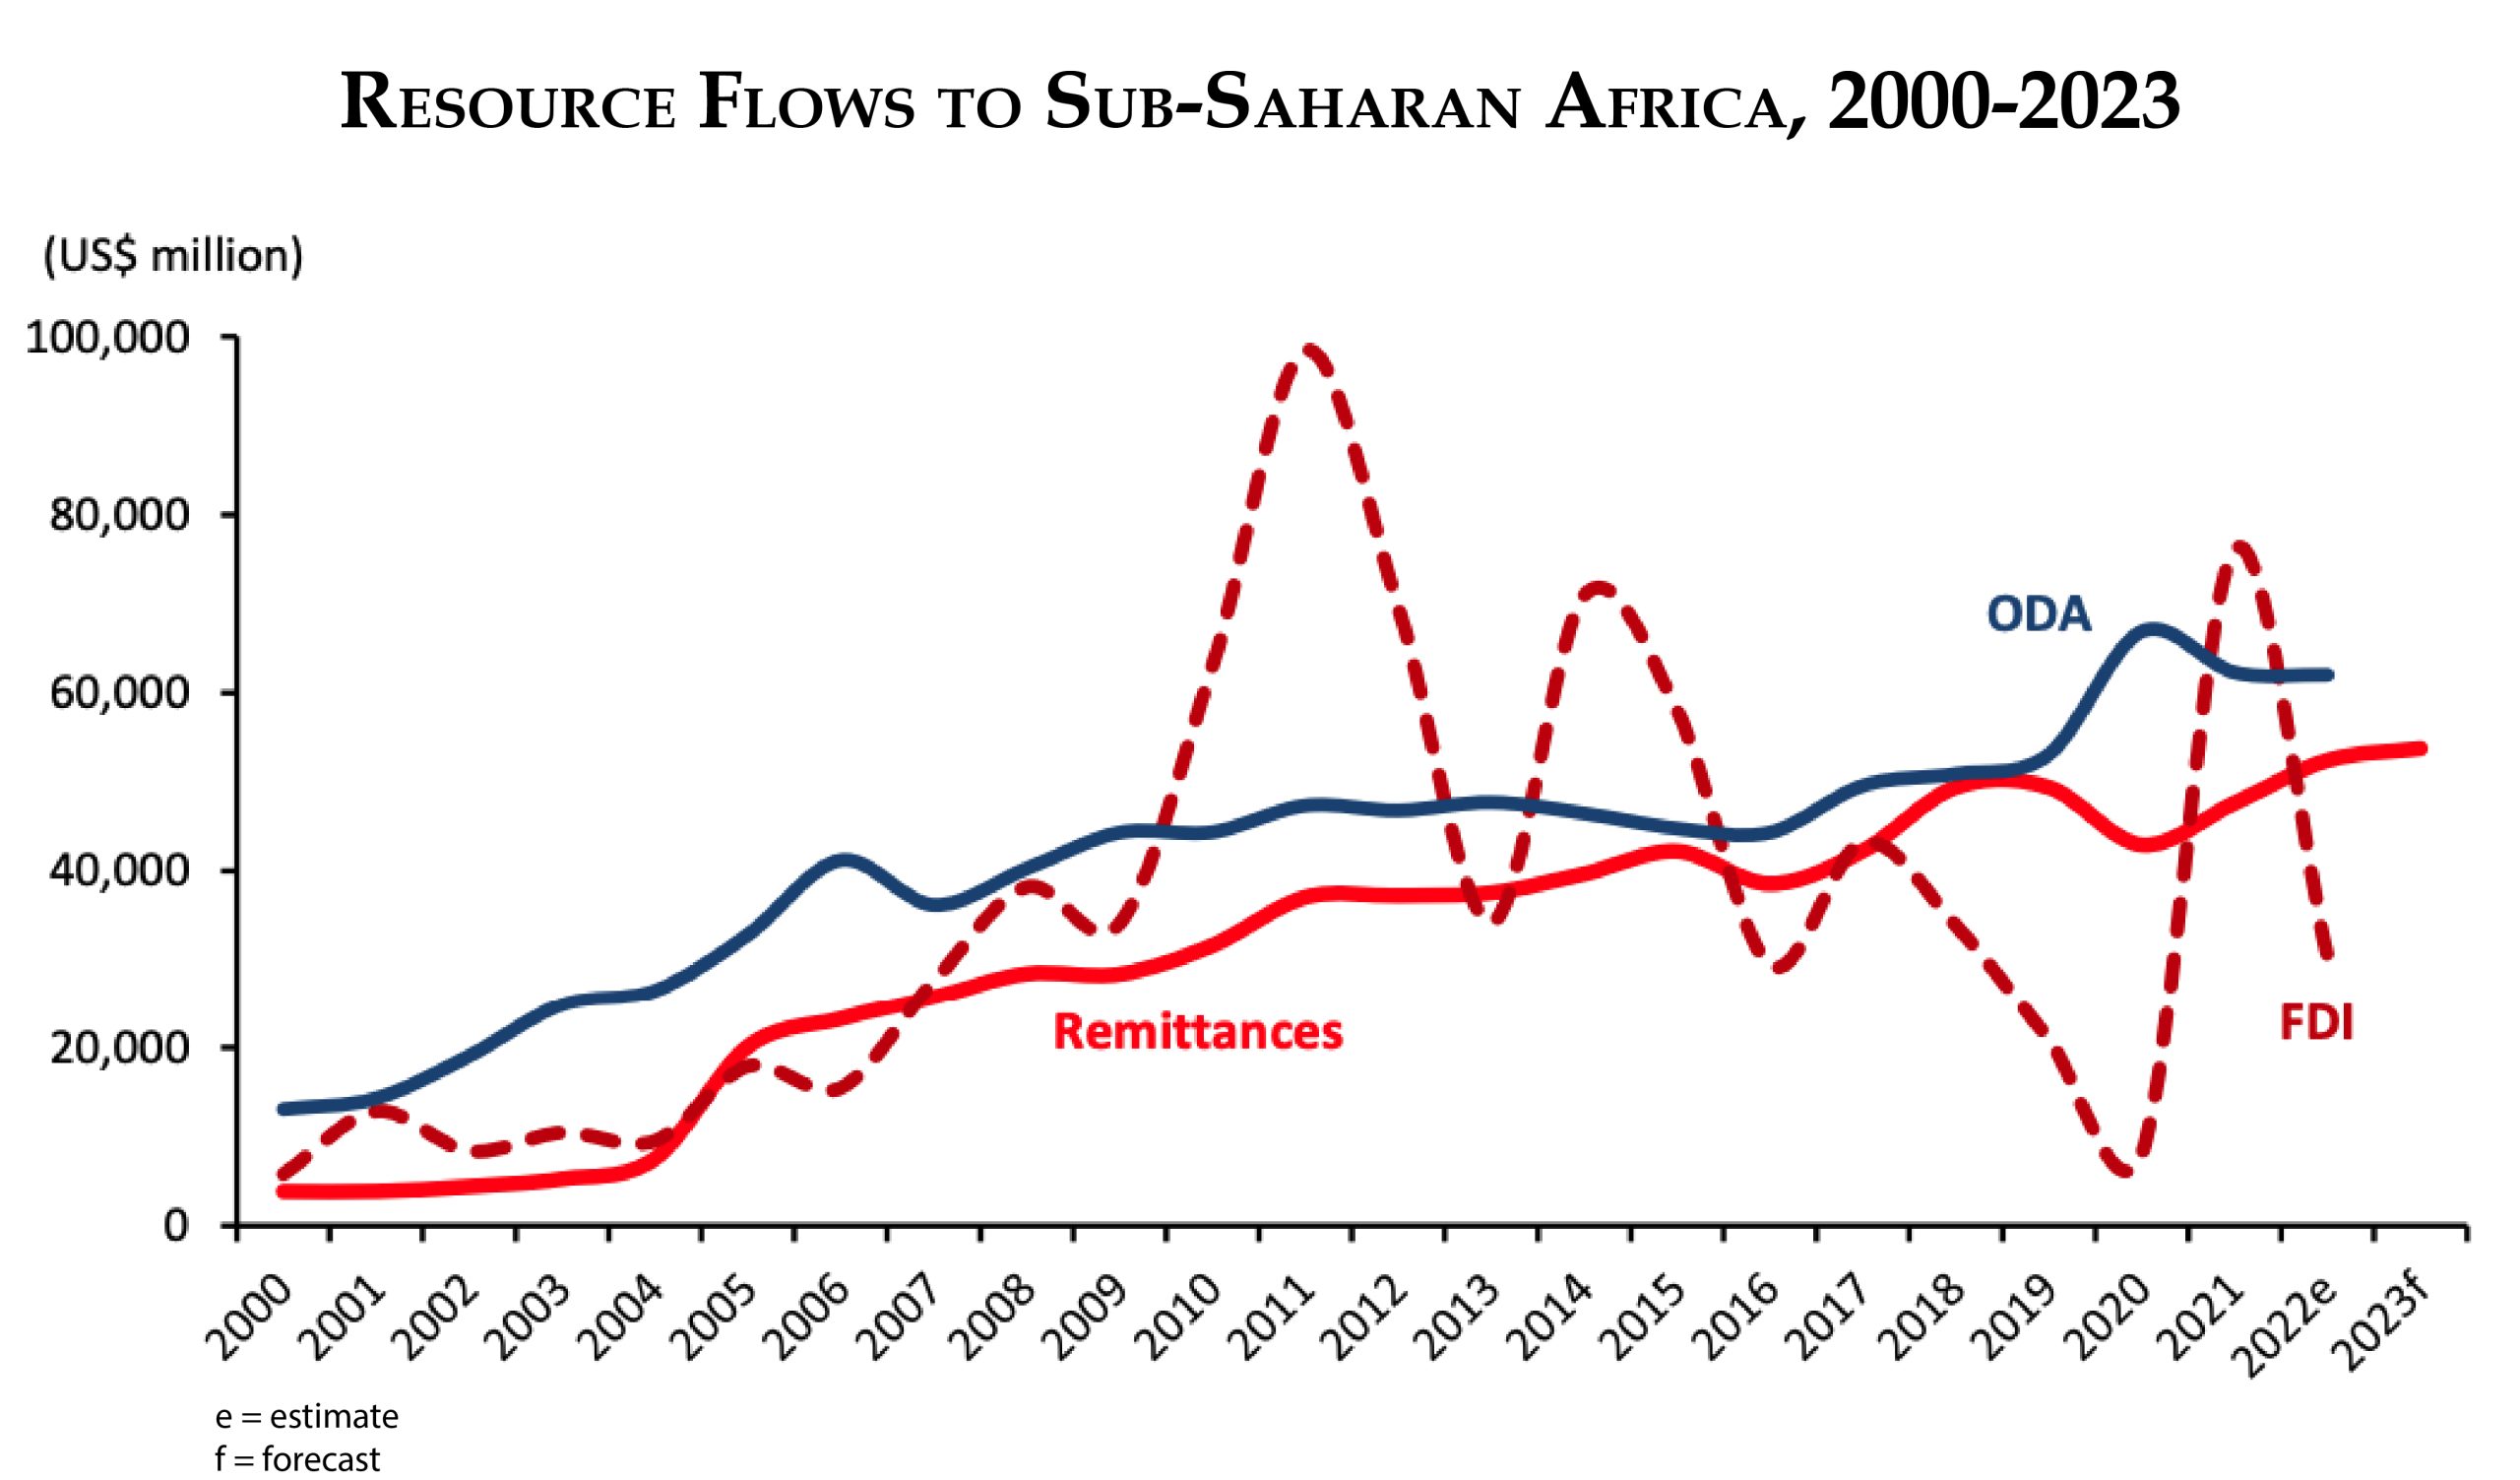 Resource flows to sub-Saharan Africa, 2000-2023